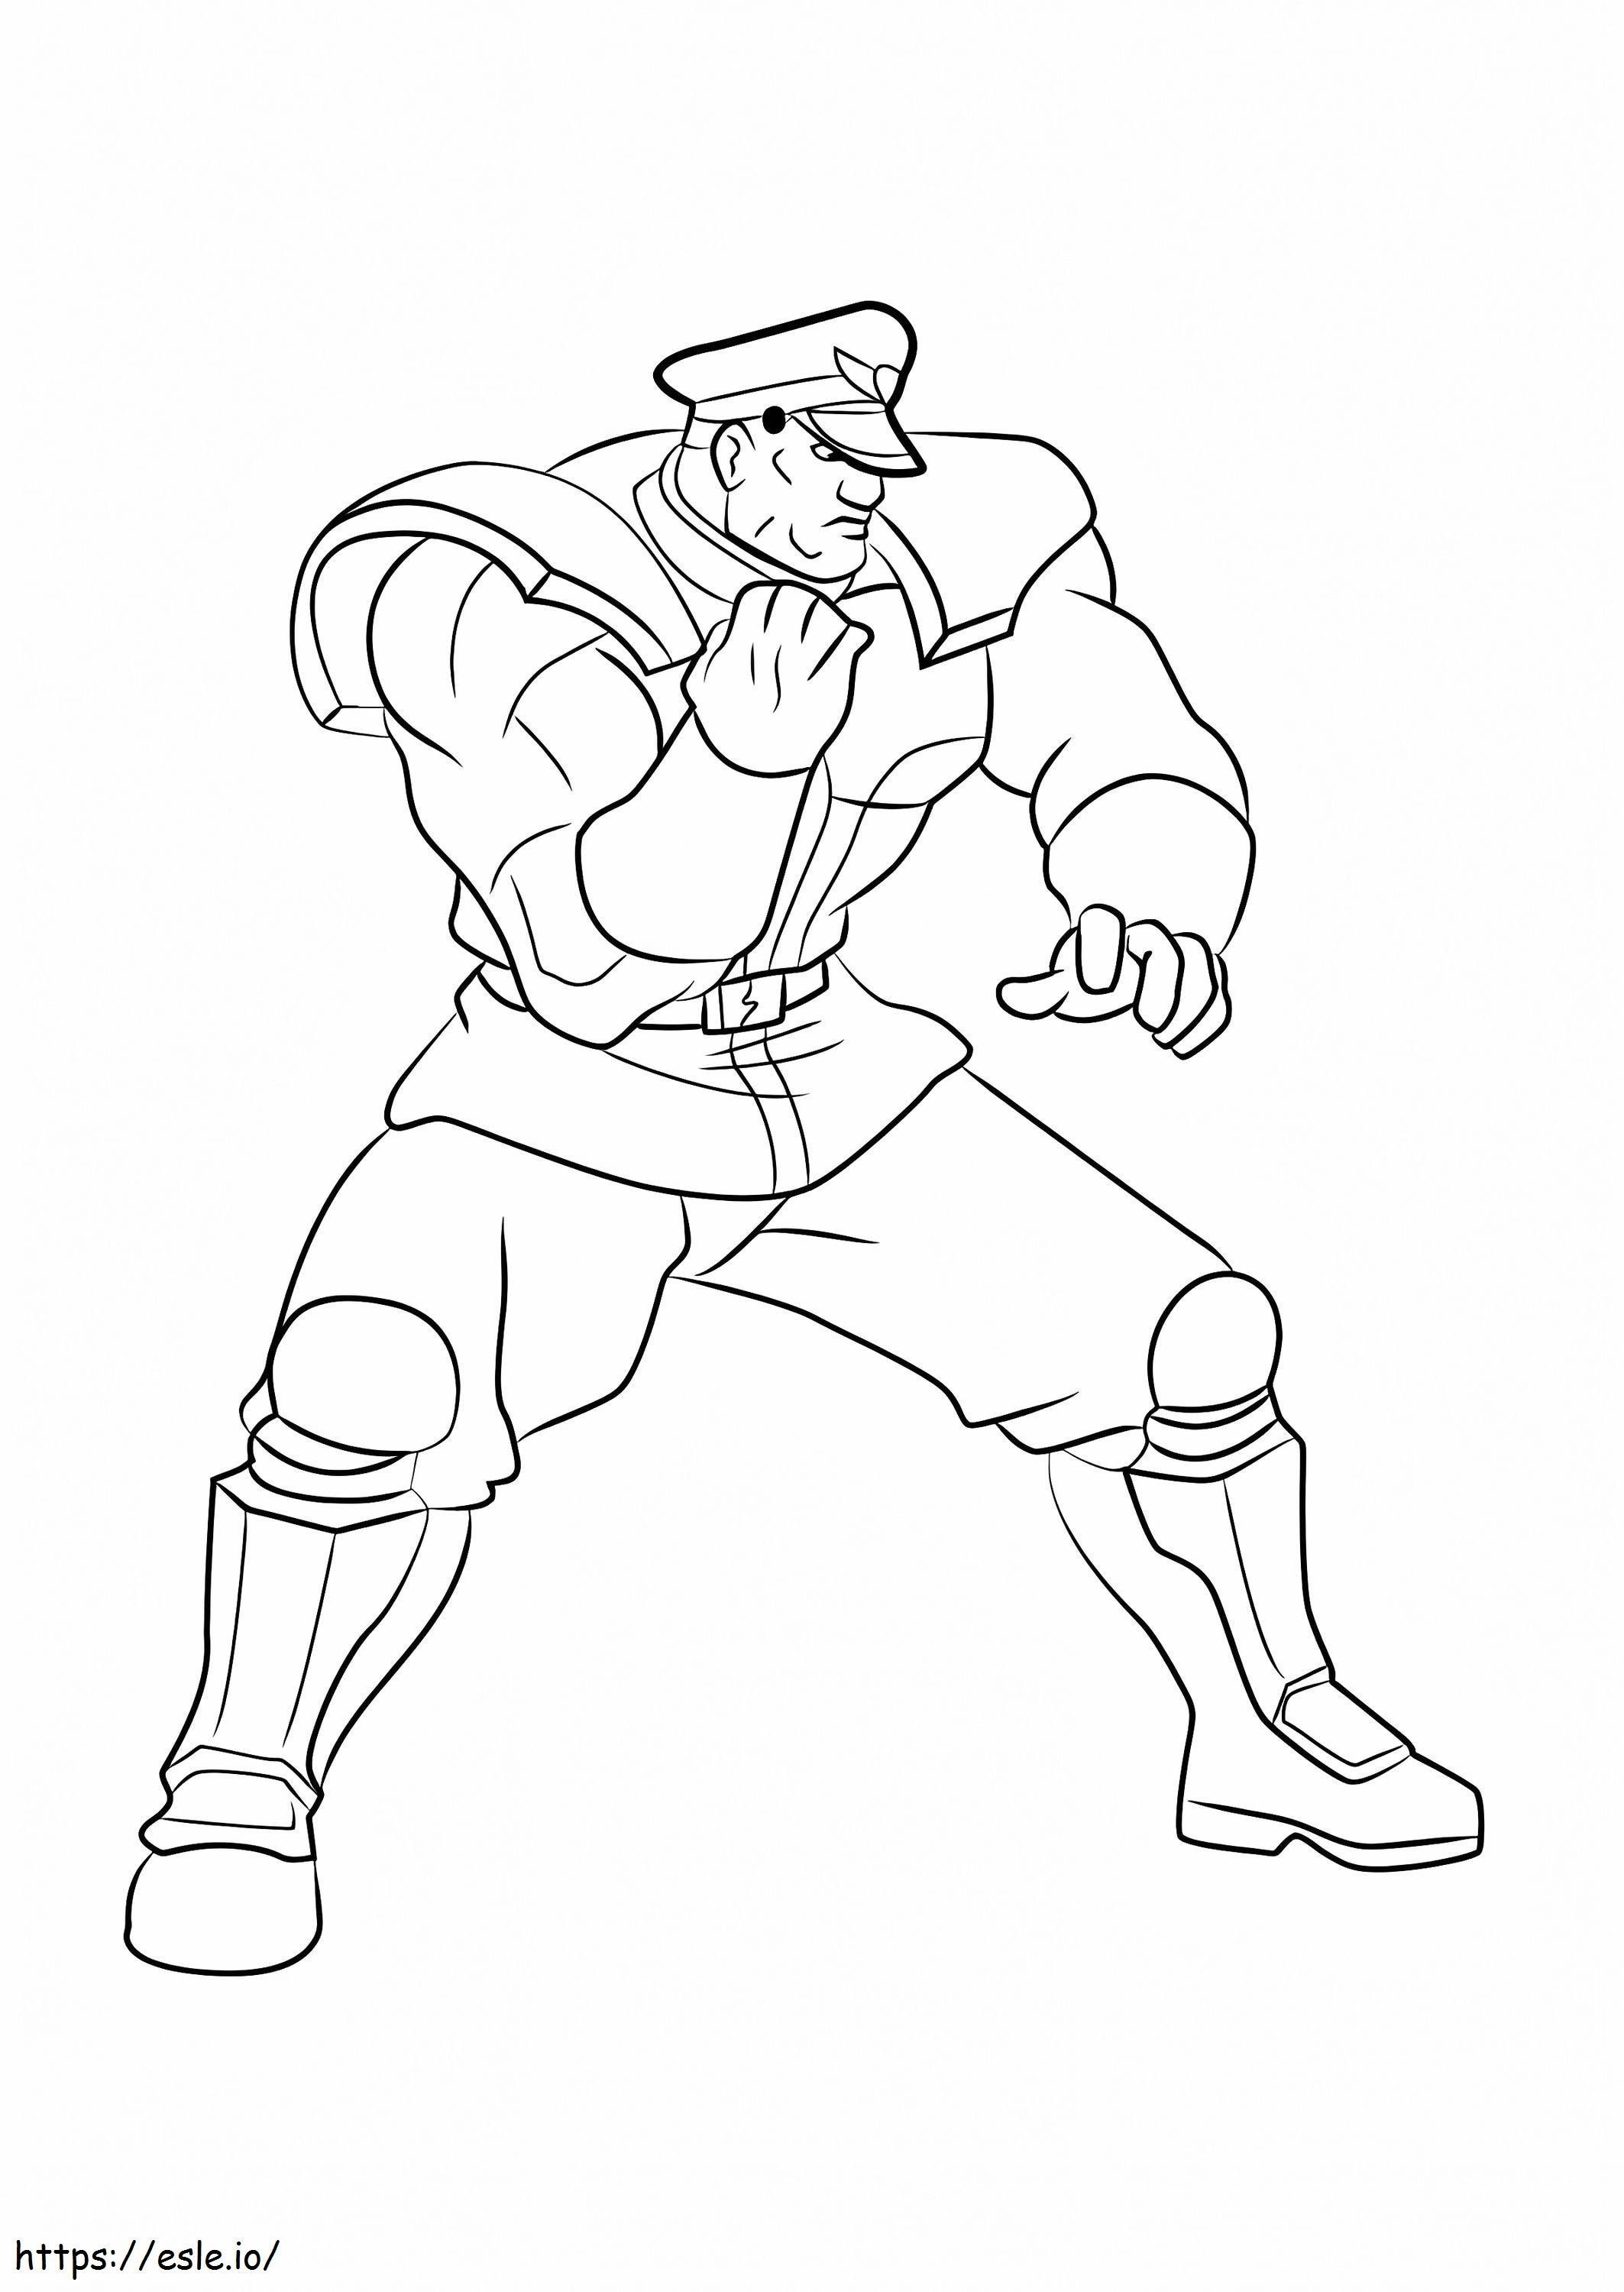 M. Bison aus Street Fighter ausmalbilder